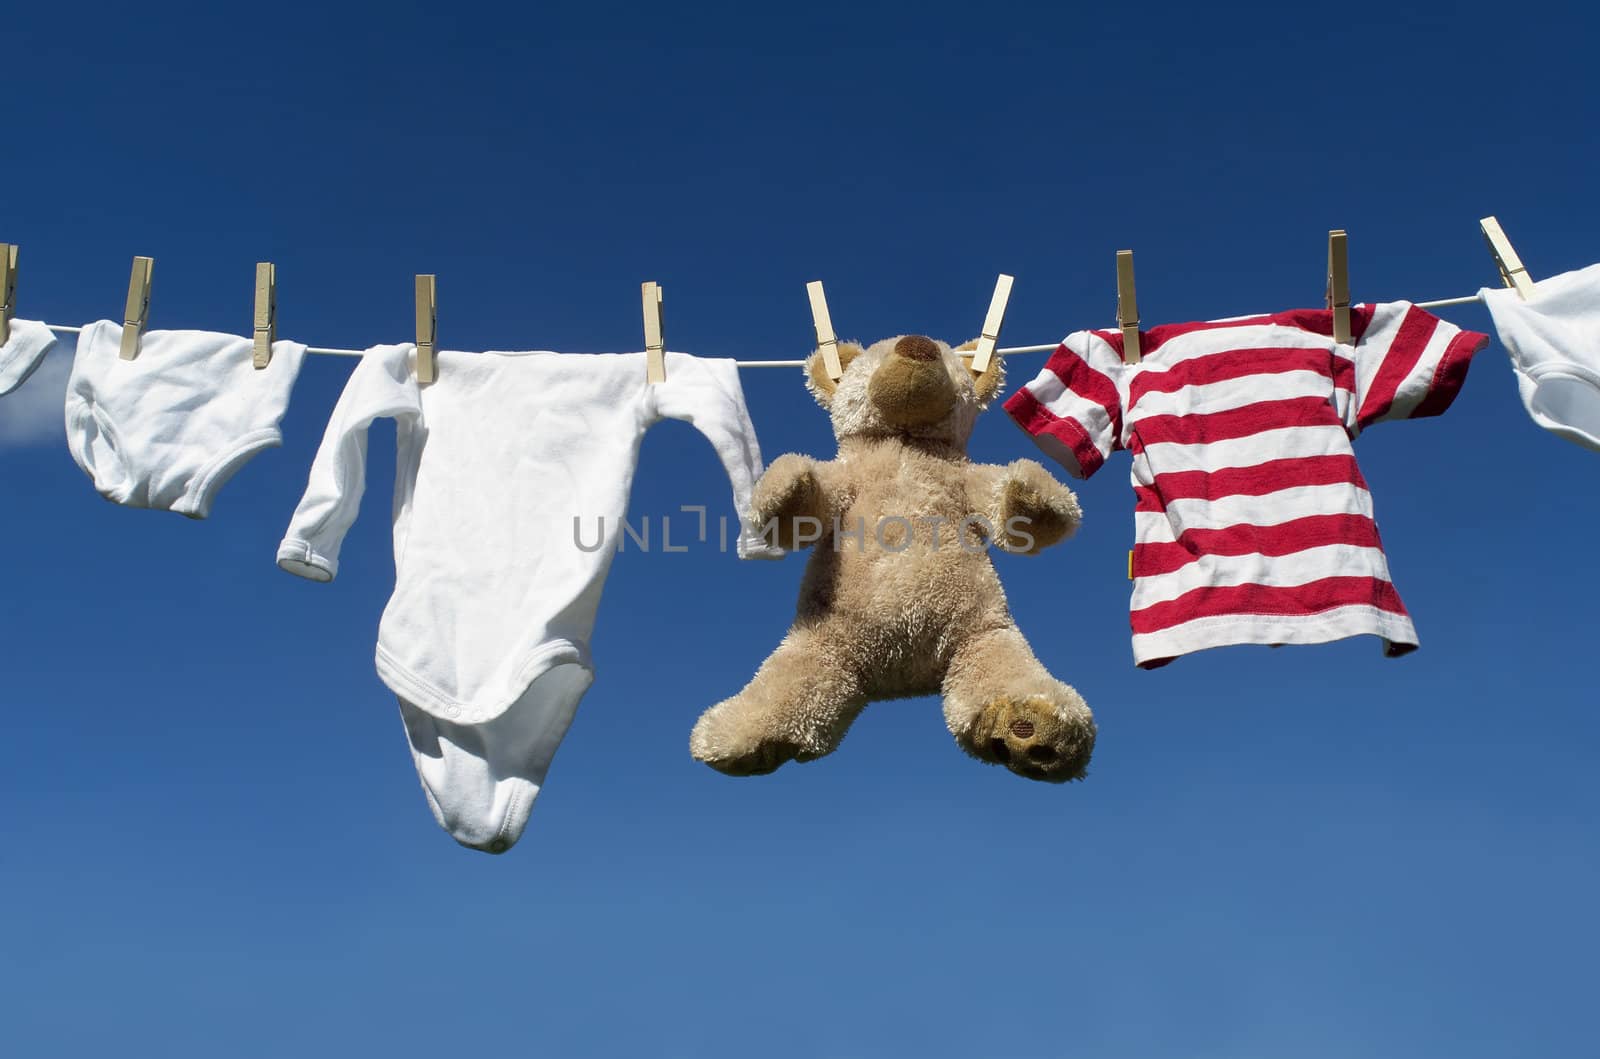 Baby Clothing and a teddybear on a clothesline towards blue sky